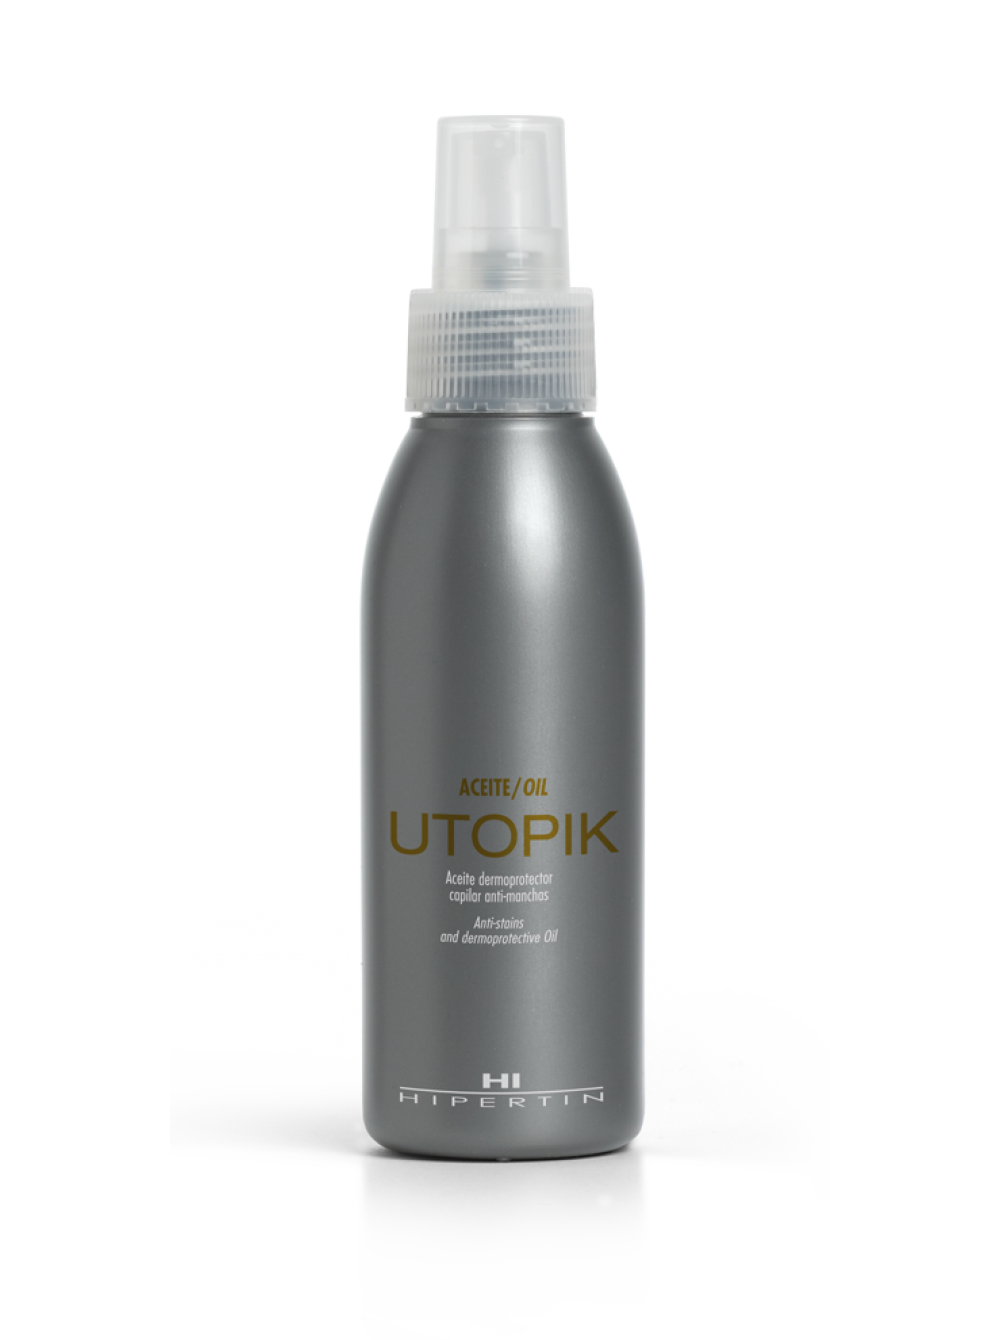 Защитное средство для кожи головы Utopik Oil Hipertin, 125 мл средство для демакияжа перед депиляцией сerazyme 1204894 400 мл